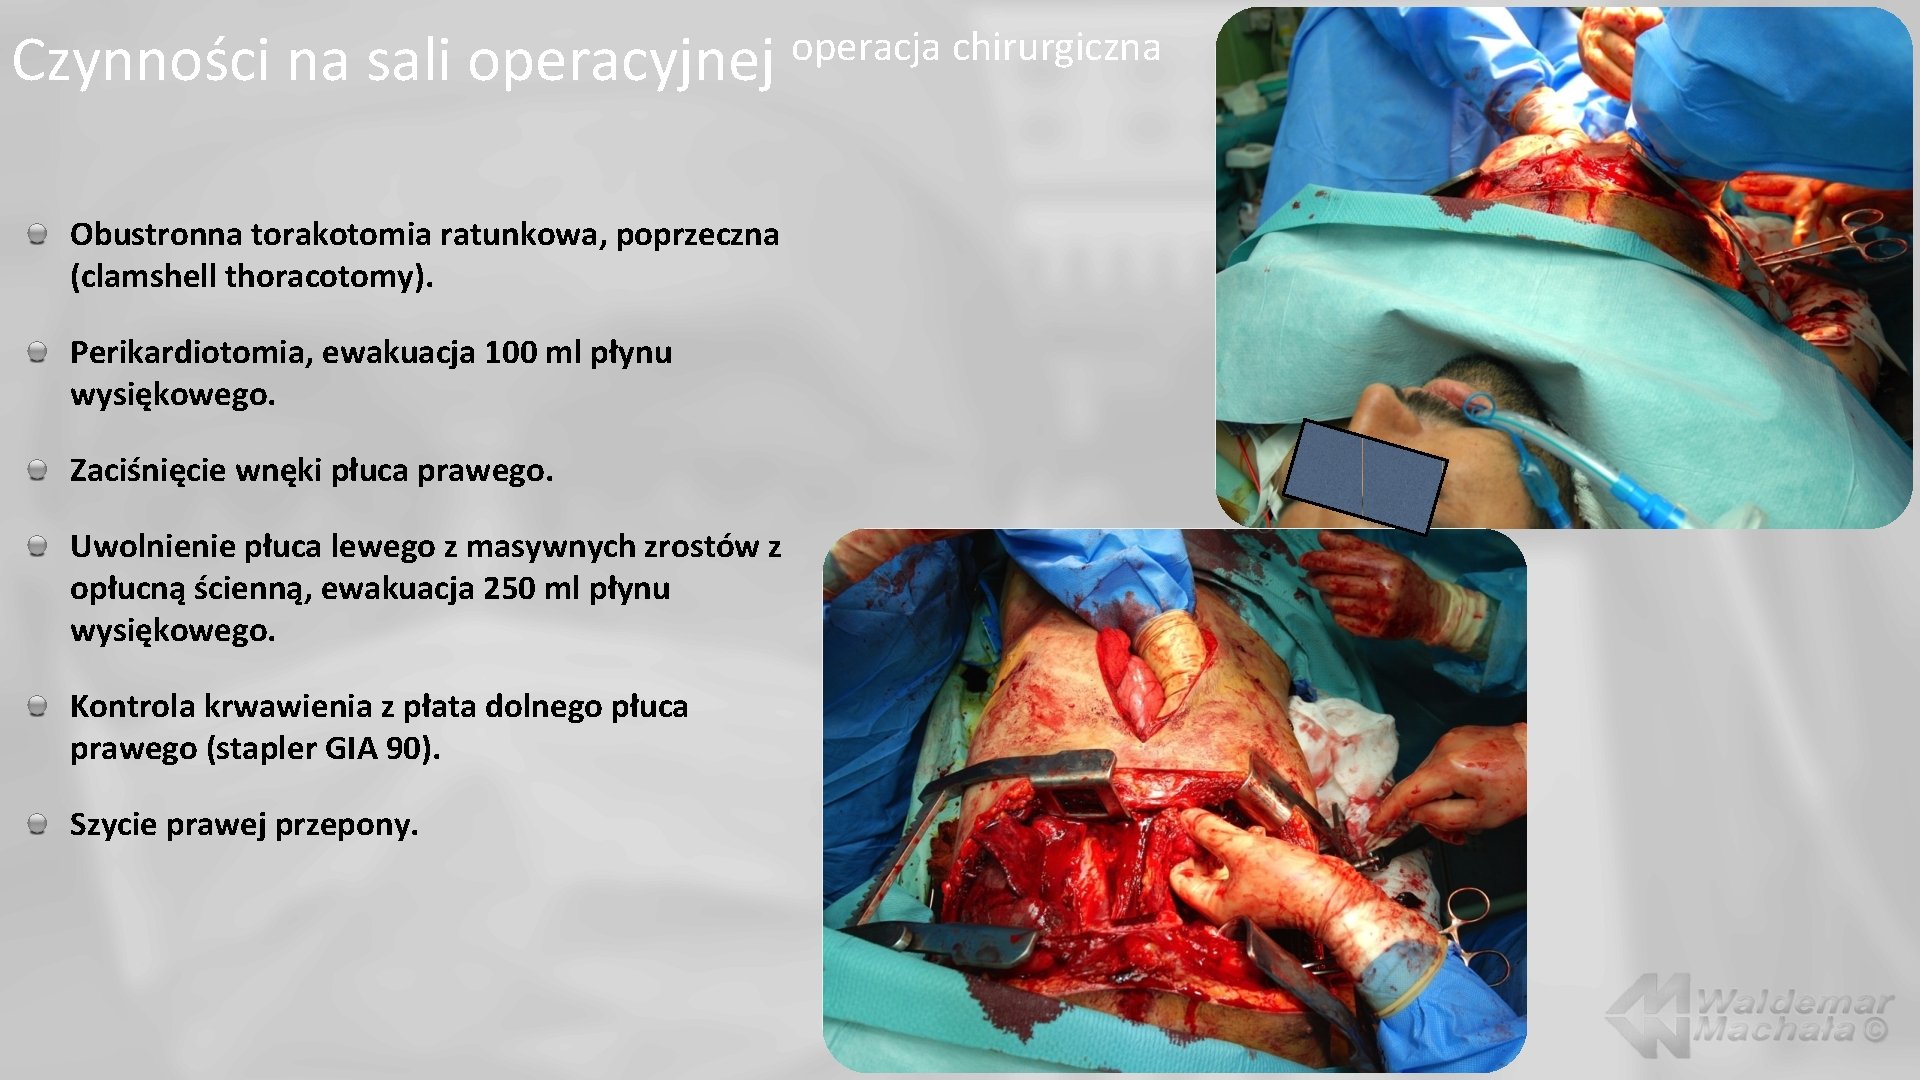 Czynności na sali operacyjnej Obustronna torakotomia ratunkowa, poprzeczna (clamshell thoracotomy). Perikardiotomia, ewakuacja 100 ml